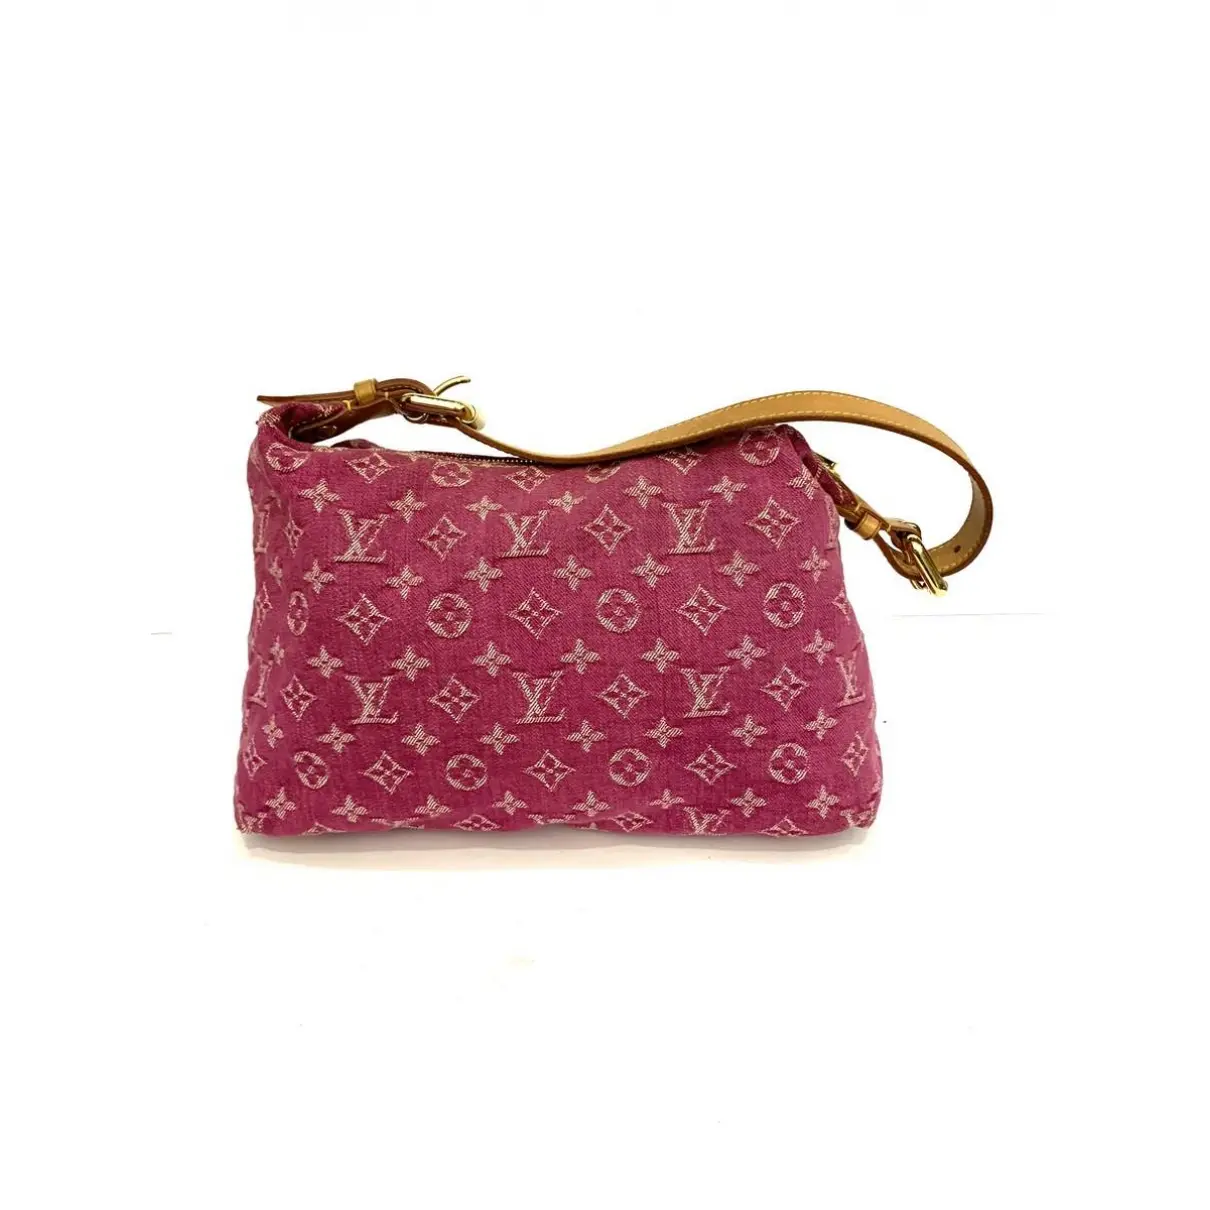 Louis Vuitton Baggy handbag for sale - Vintage